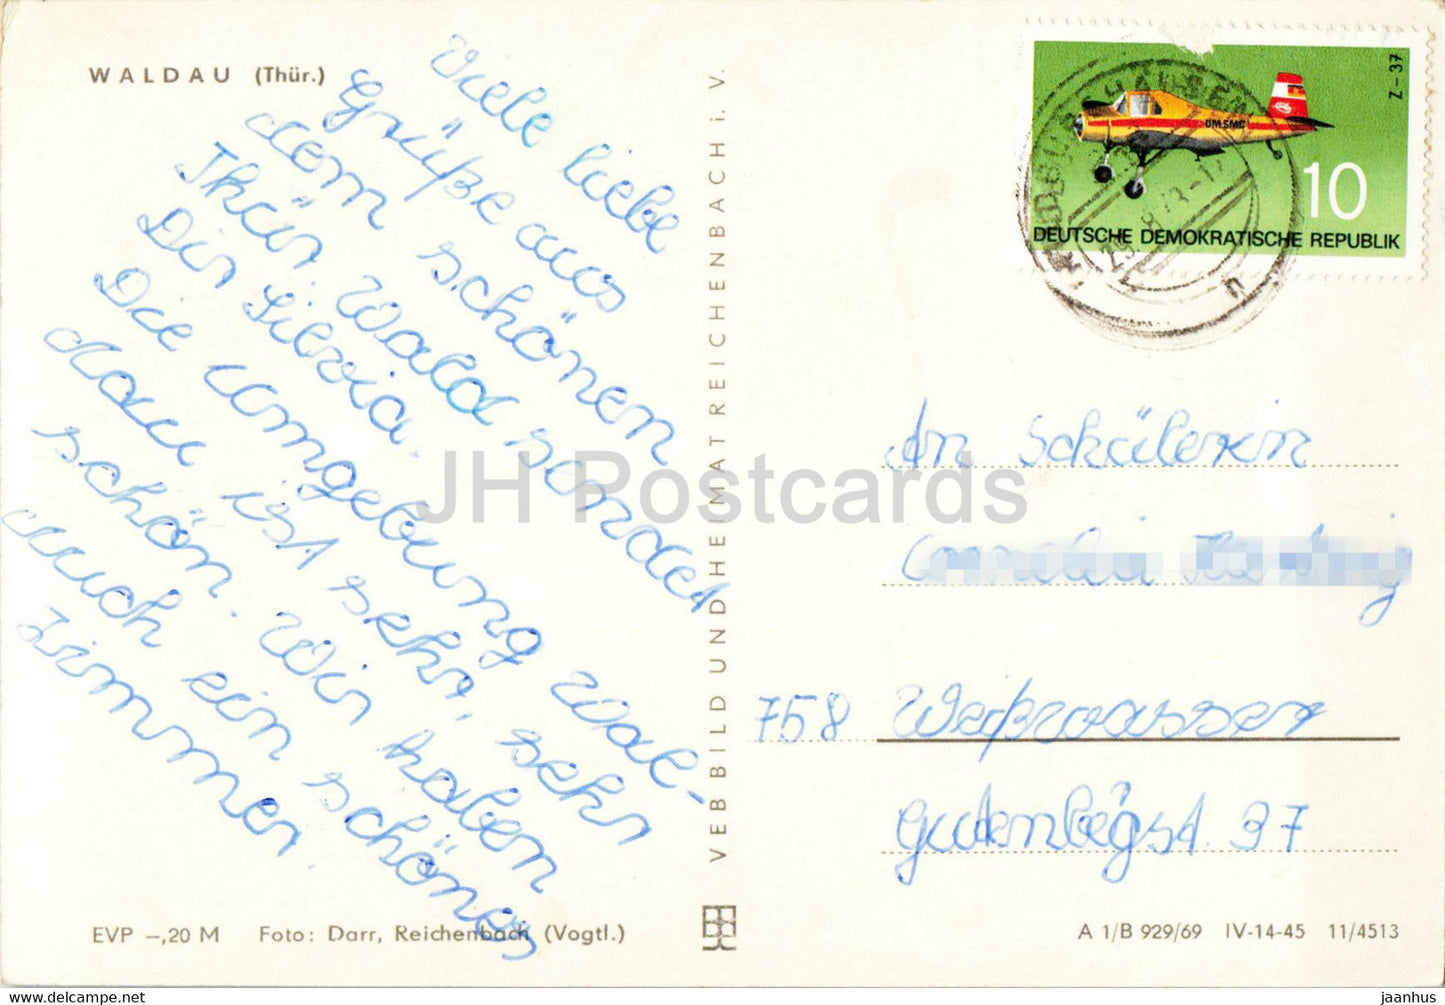 Waldau - Thur - old postcard - Germany DDR - used